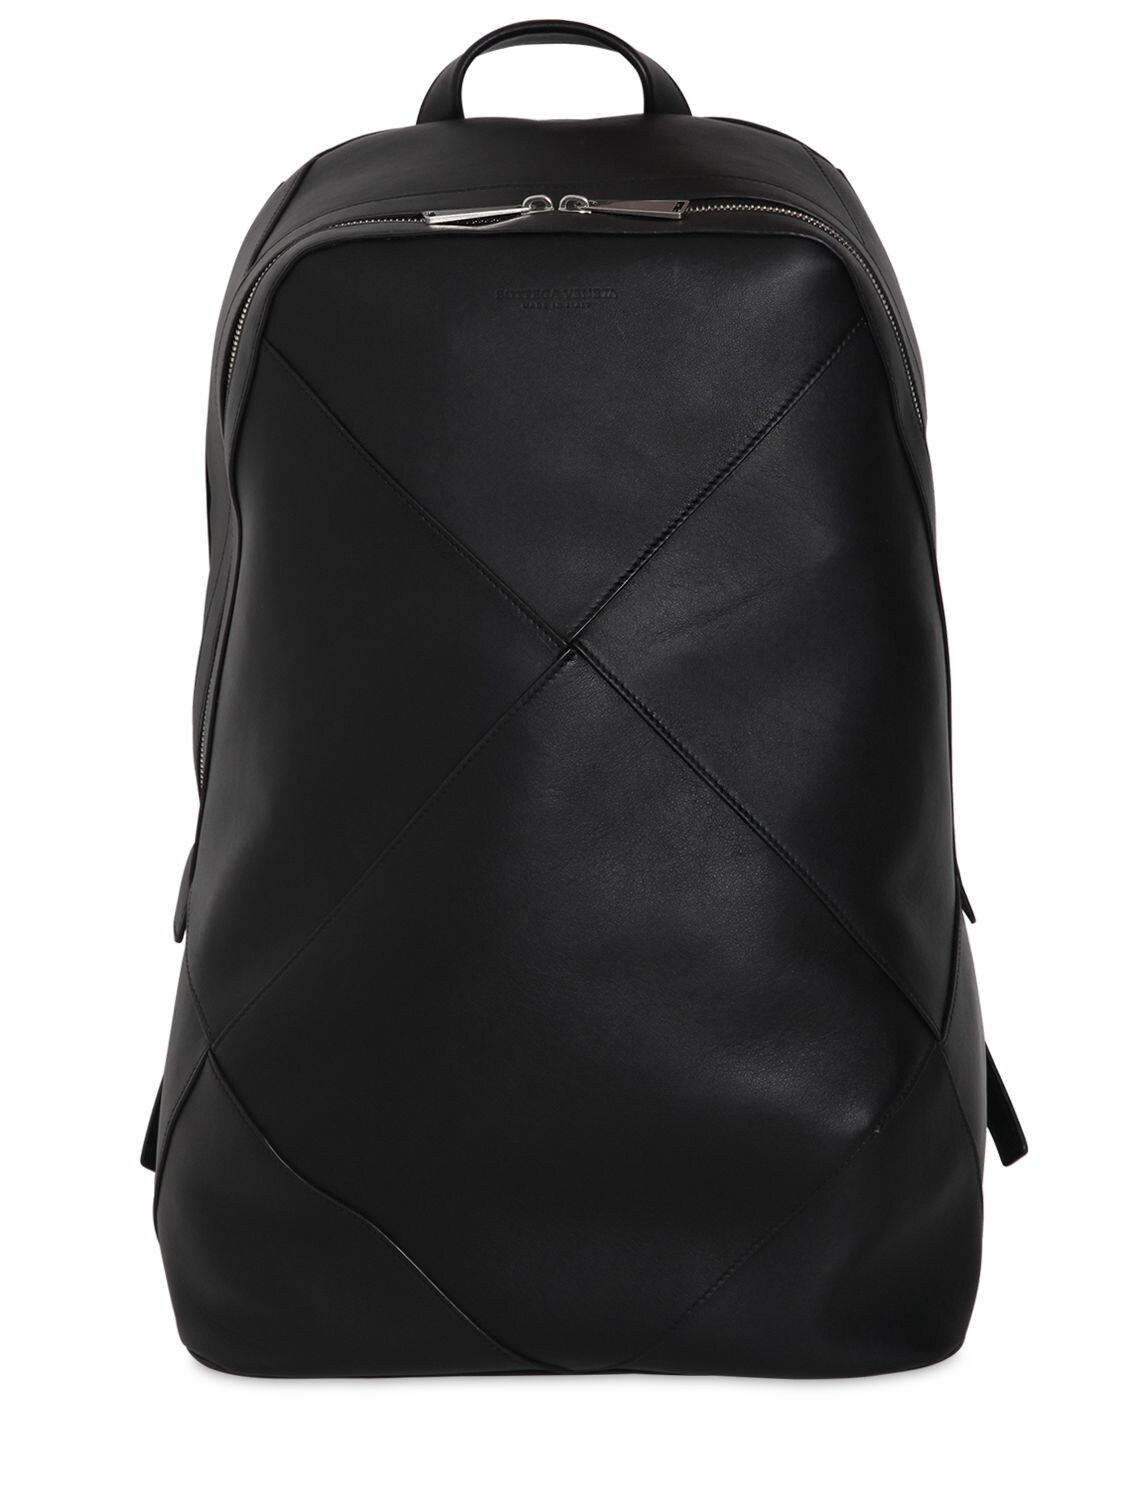 Maxi Intreccio Leather Backpack